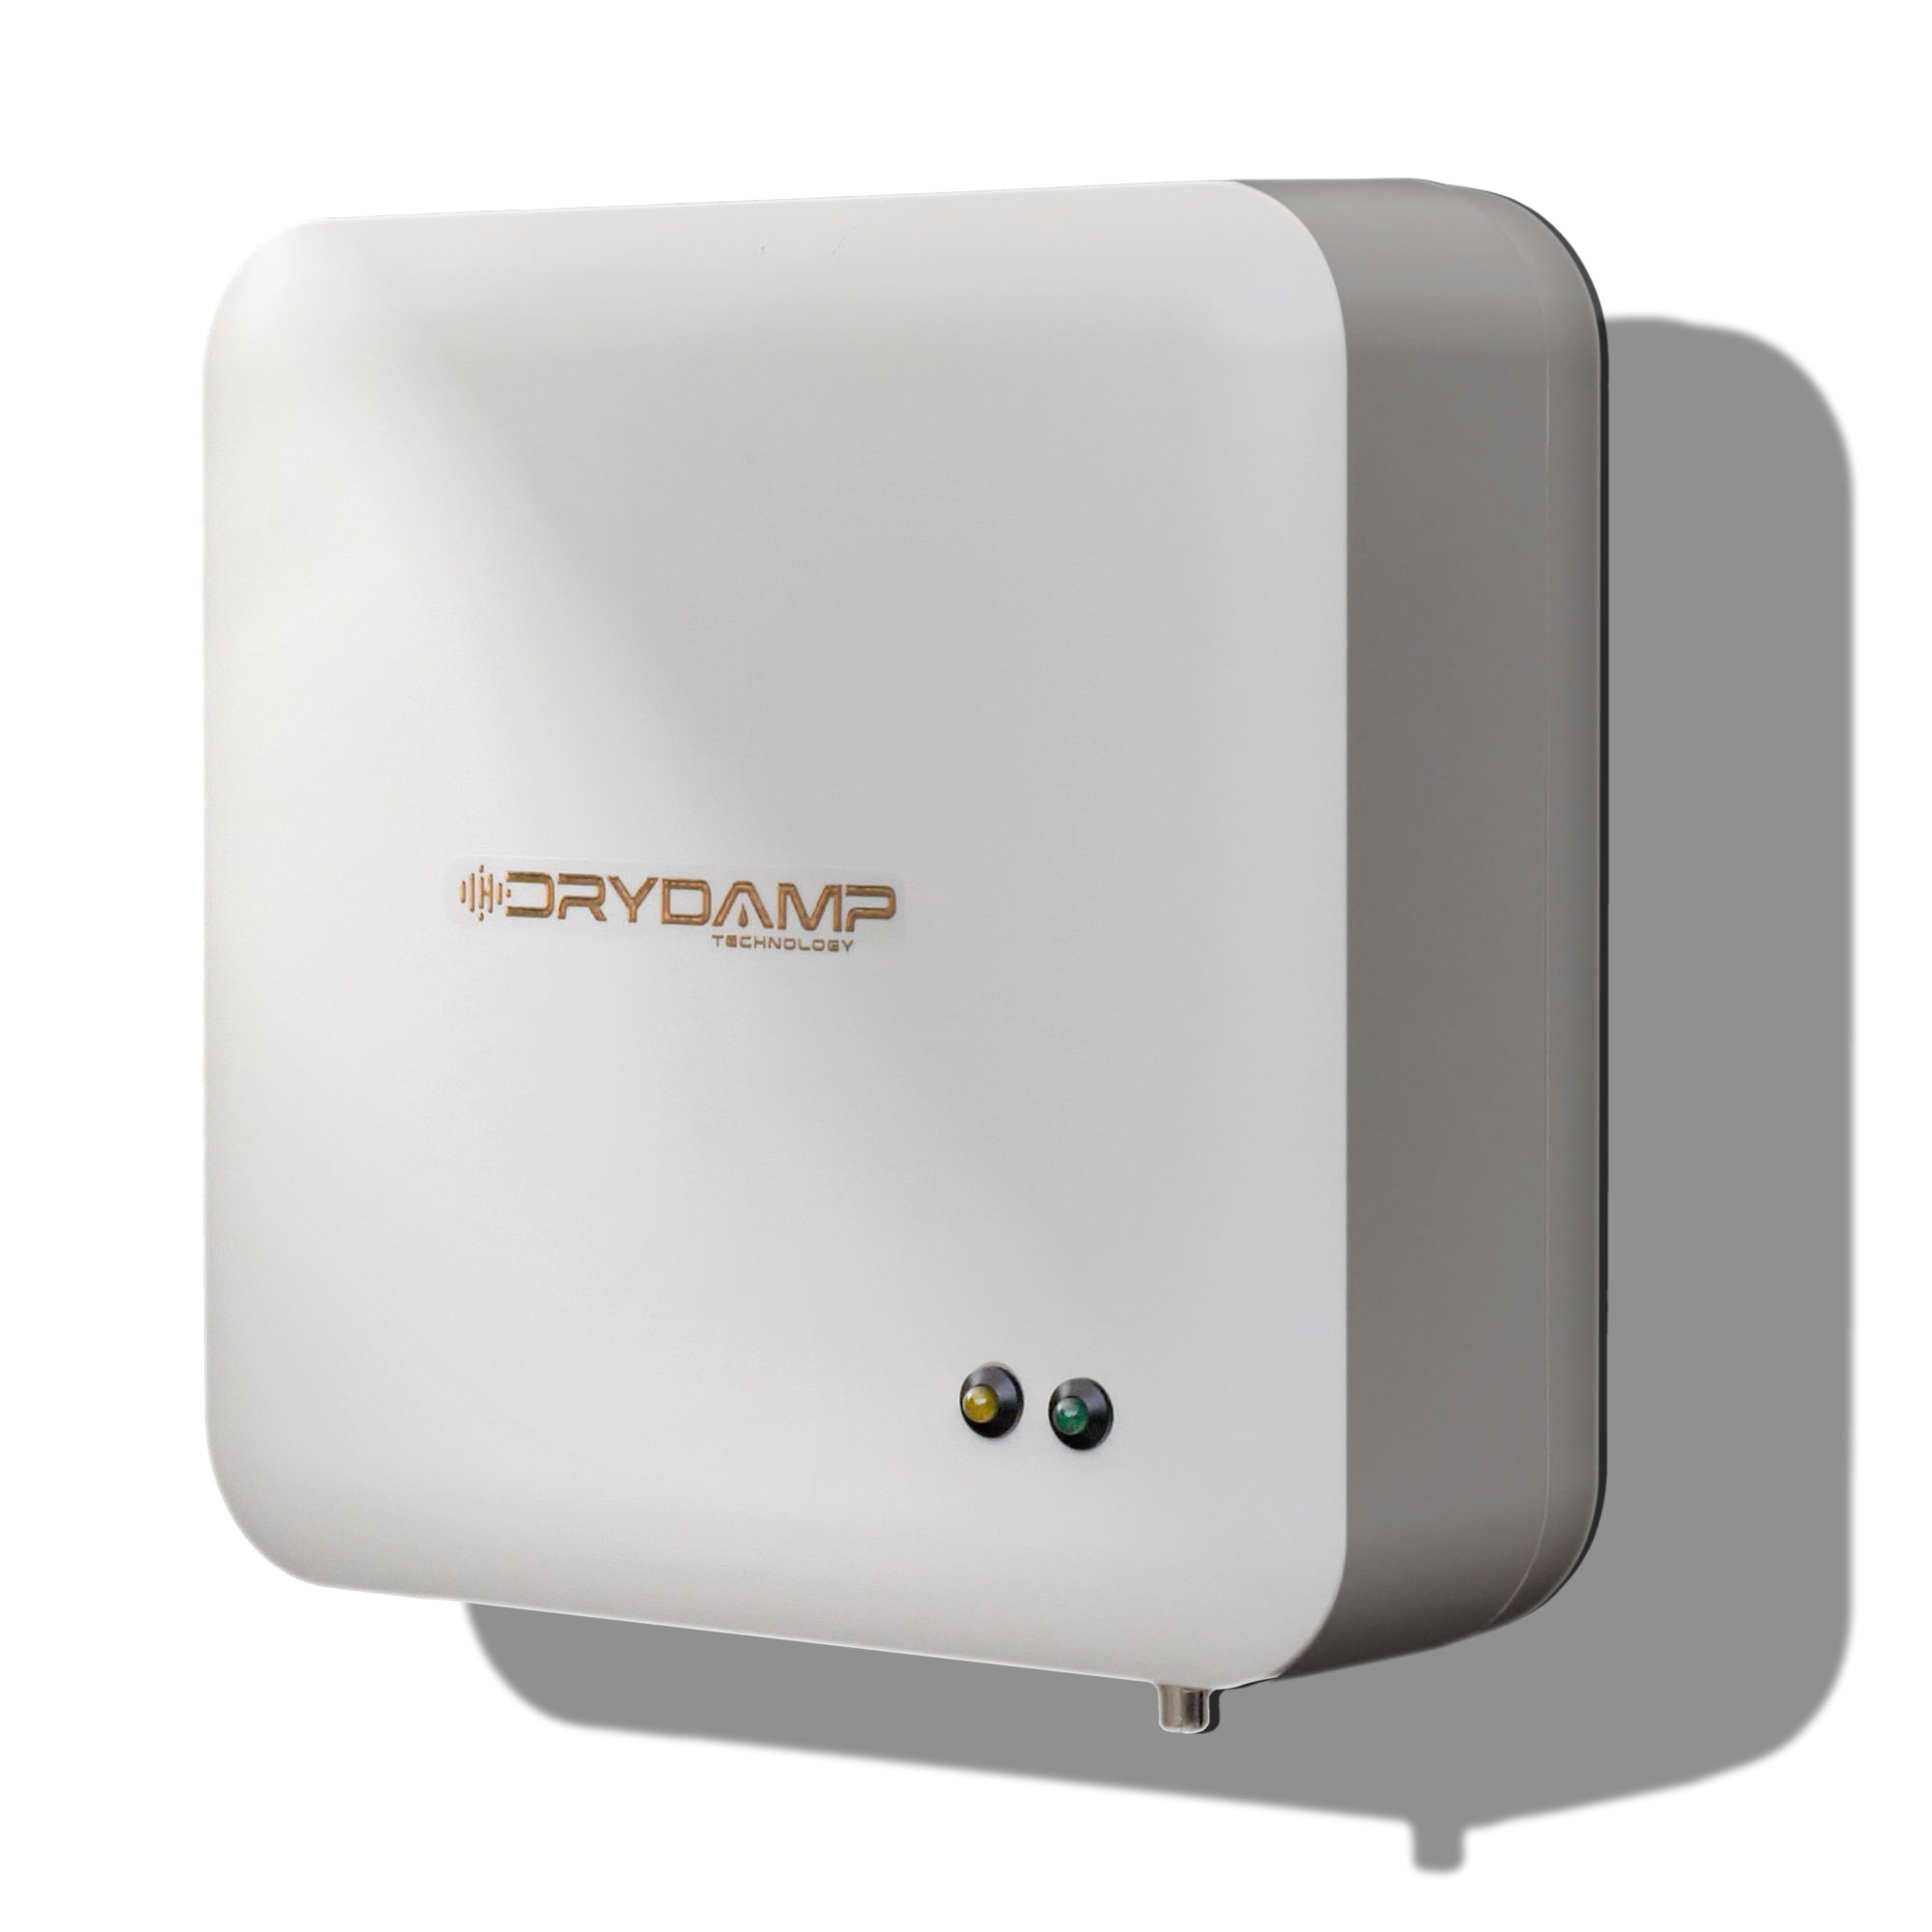 Il dispositivo Drydamp si presenta come una elegante scatola bianca di dimensioni contenute, con led di controllo.